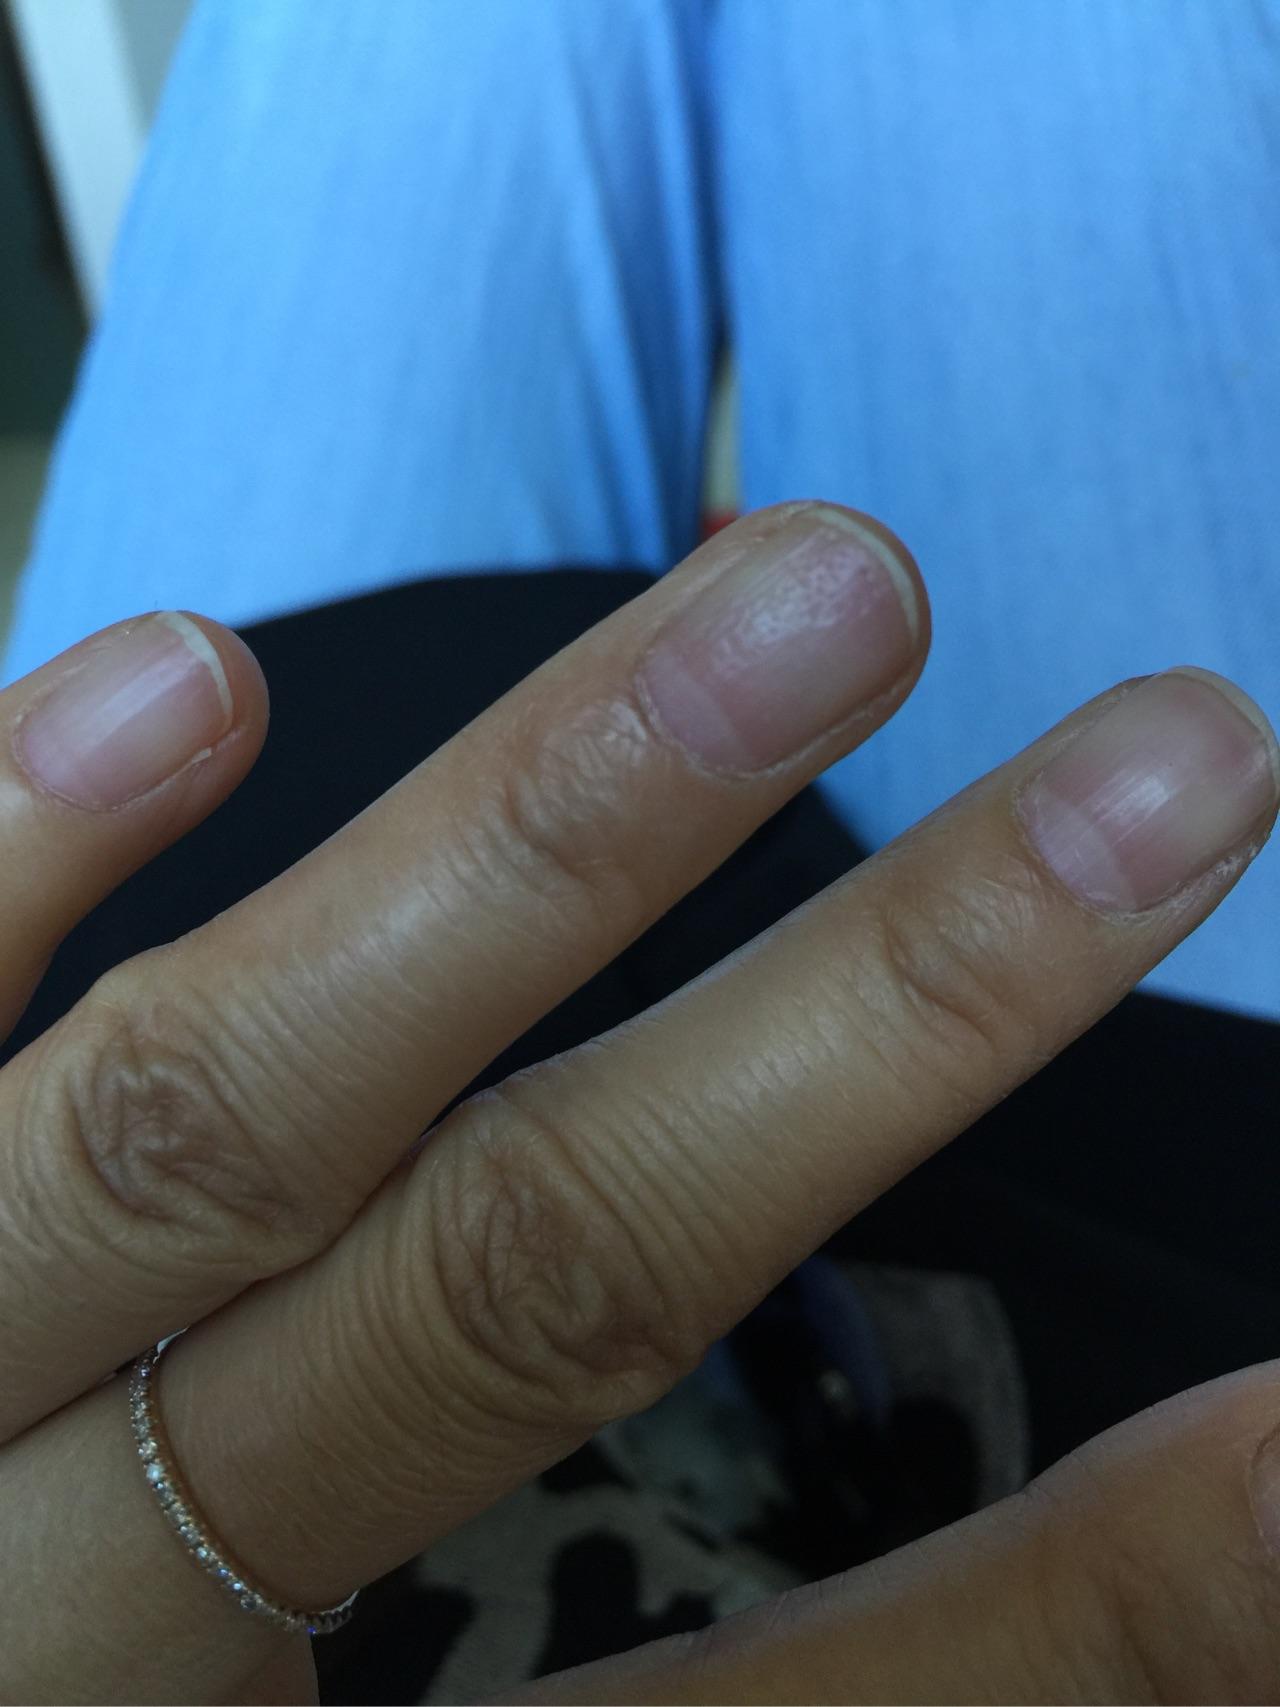 我的指甲上有很多小坑,好几年了,怎么回事? 